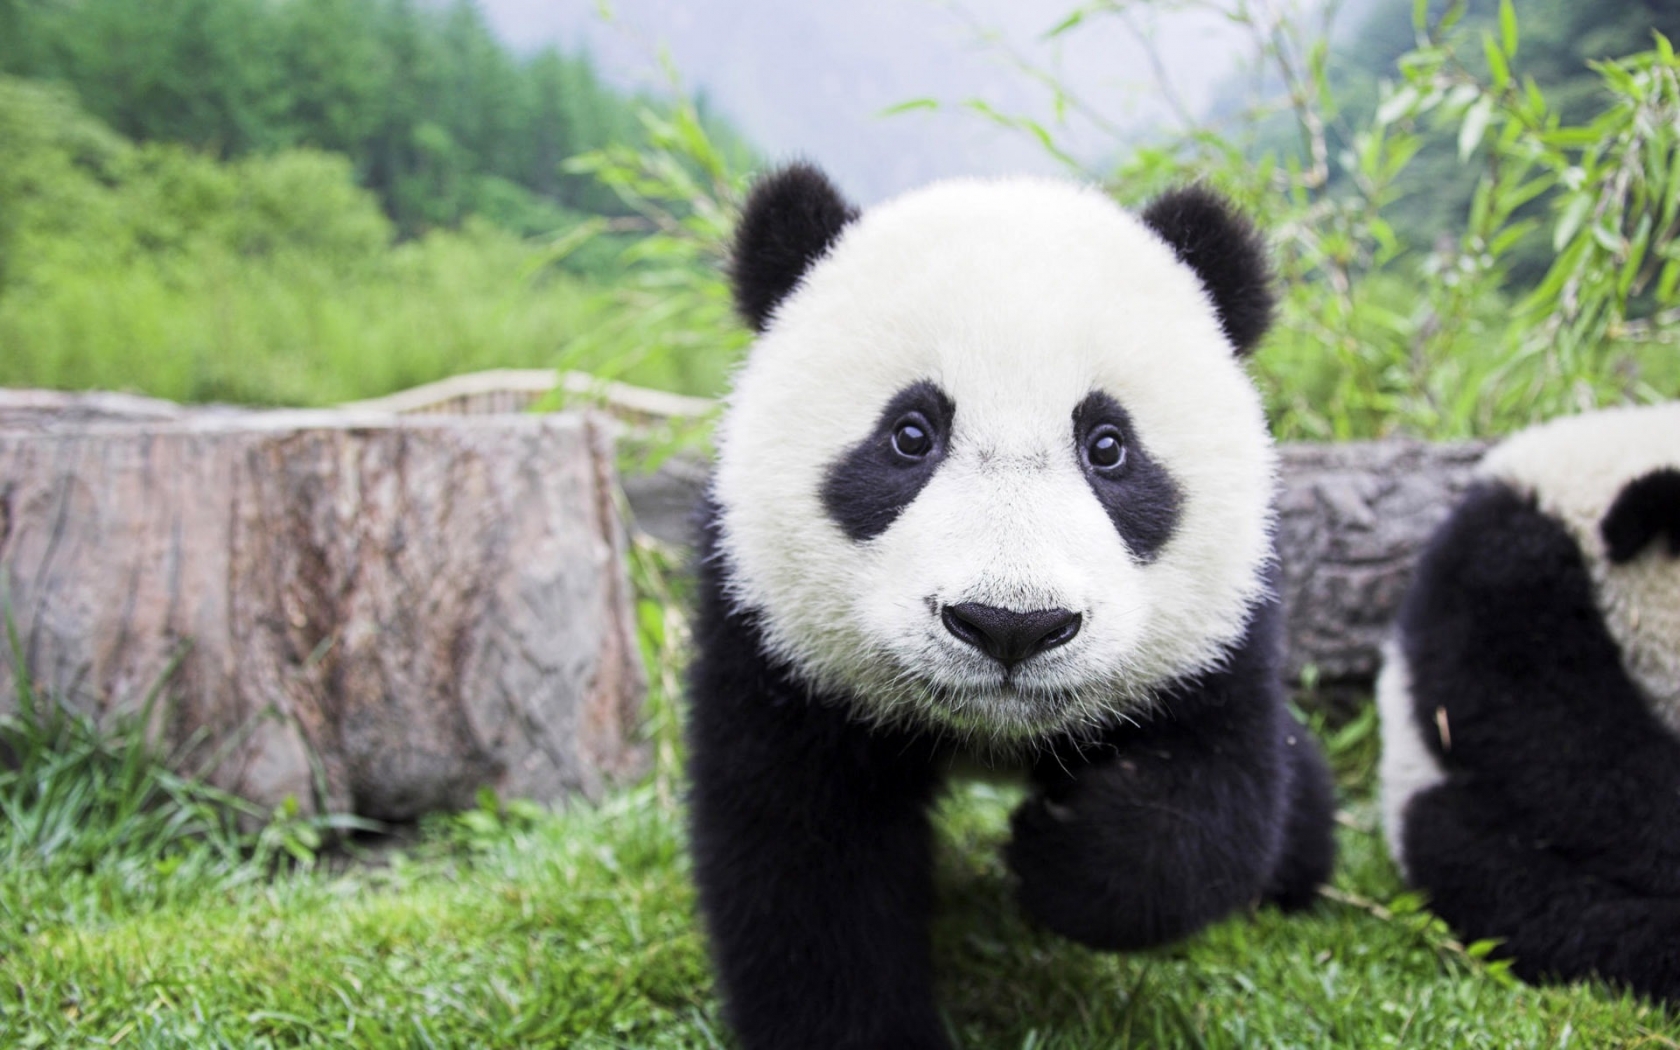 Beautiful Baby Panda for 1680 x 1050 widescreen resolution